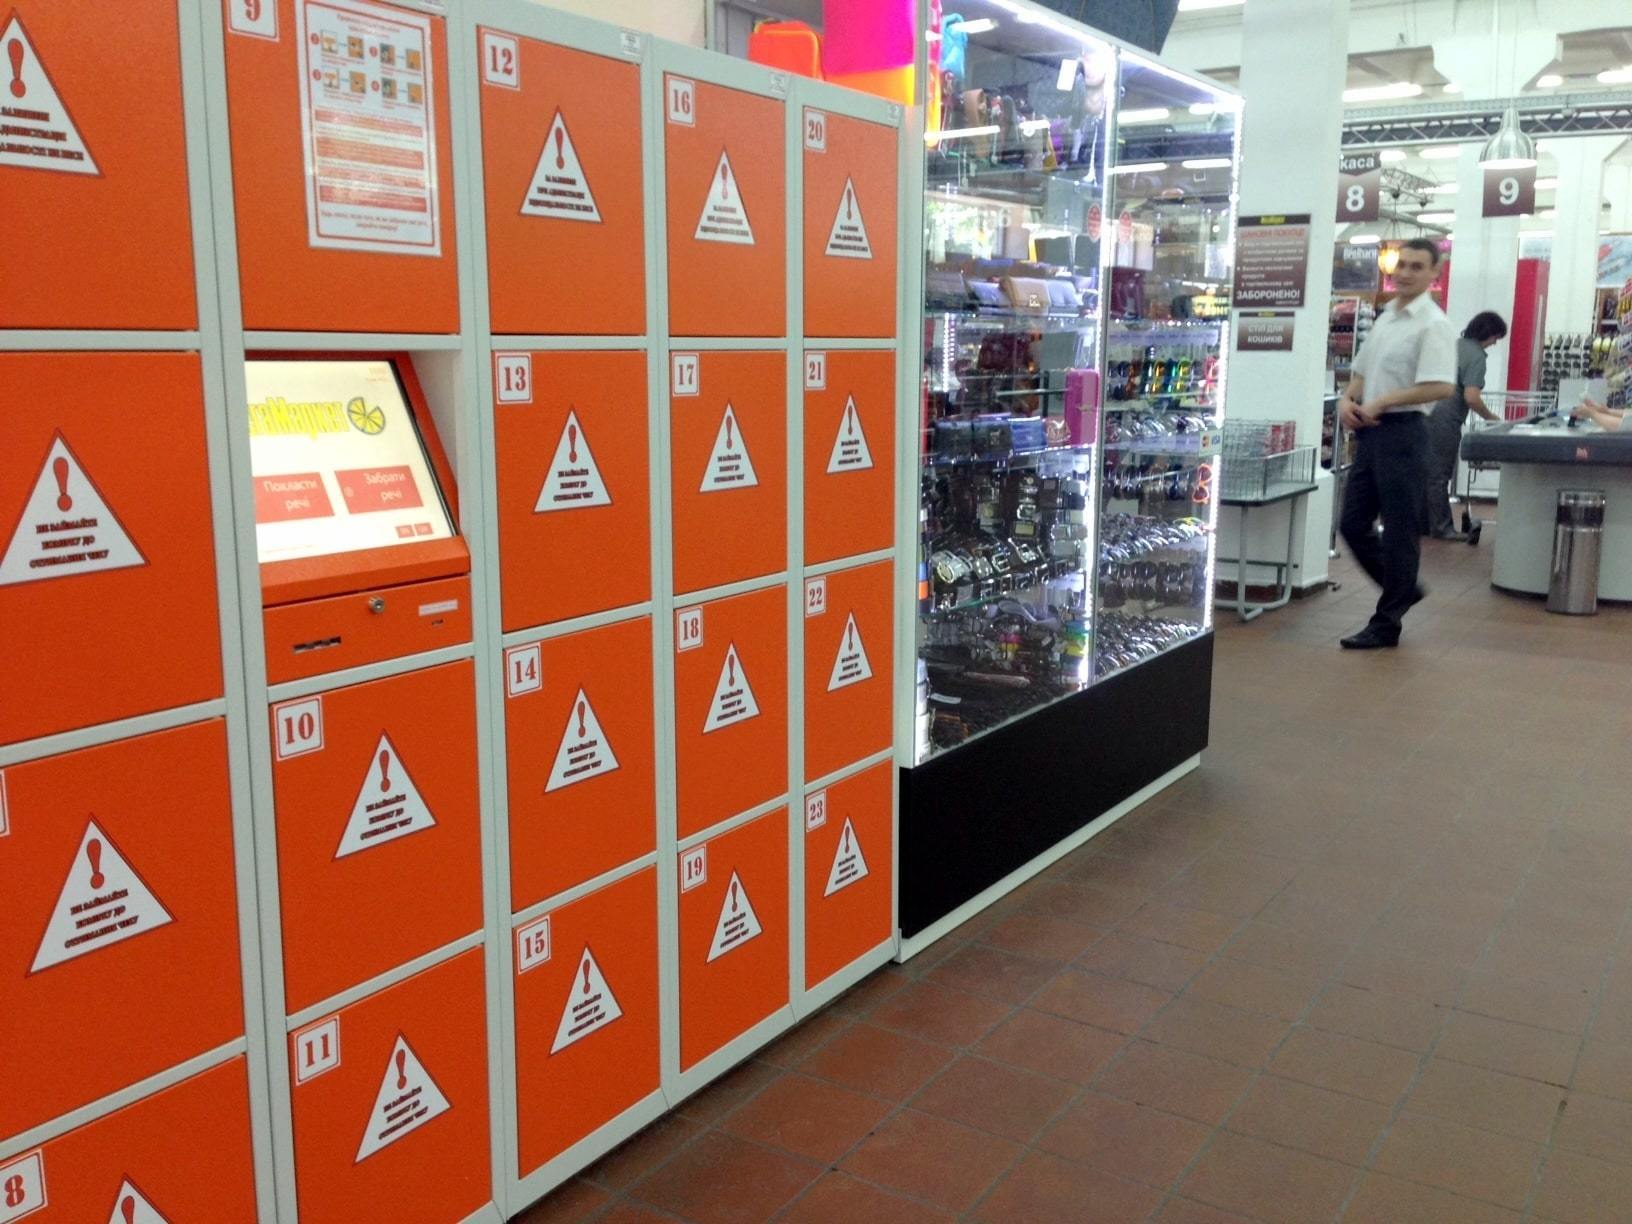 Casillero taquillas automáticas y consignas de comercios para tiendas España, Sevilla 2019